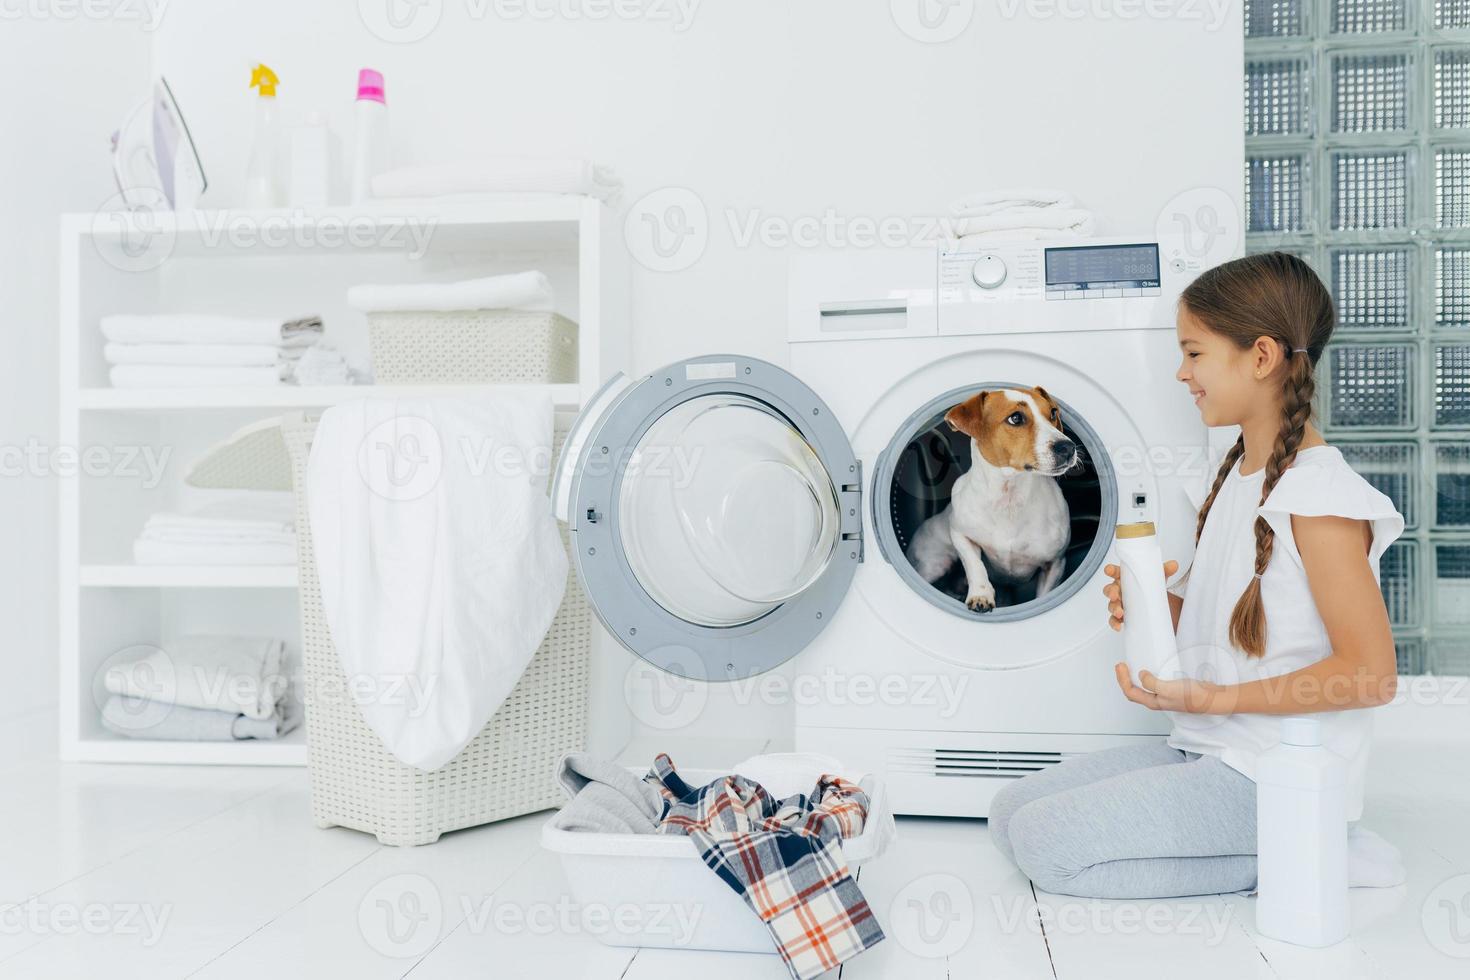 positiv liten tjej har kul med jack russel terrier, poserar på golvet nära tvättmaskinen i tvättstugan, håller flytande pulver, upptagen med hushållsarbete, har ett glatt uttryck. mysig inredning i badrummet foto